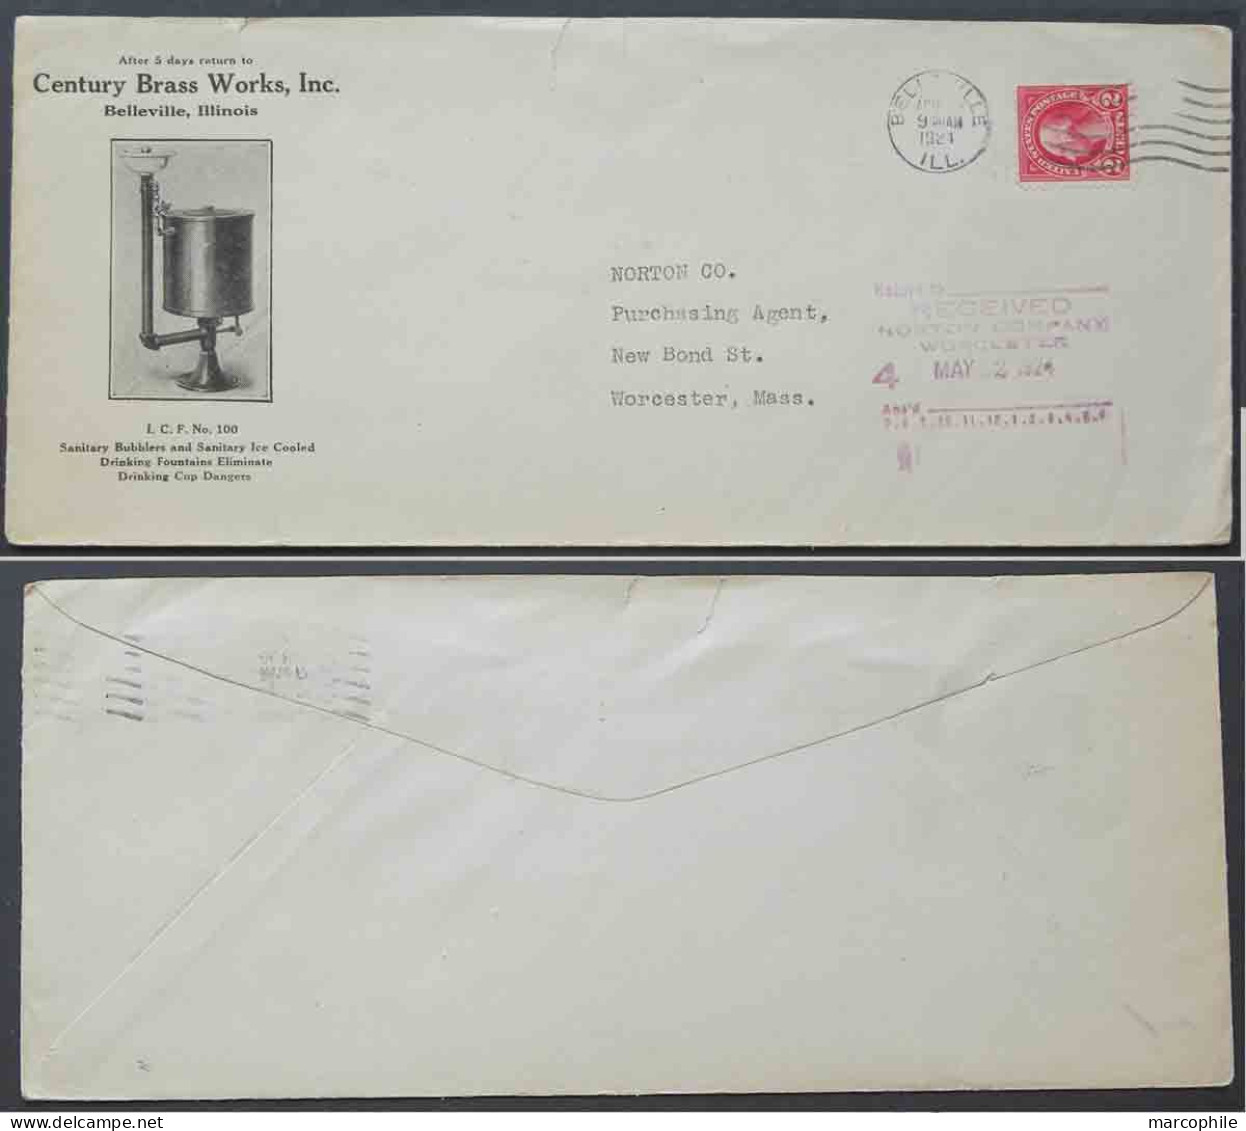 EAU - FONTAINE - LAITON / 1924 USA - BELLEVILLE ENVELOPPE COMMERCIALE ILLUSTREE (ref 4195) - Acqua